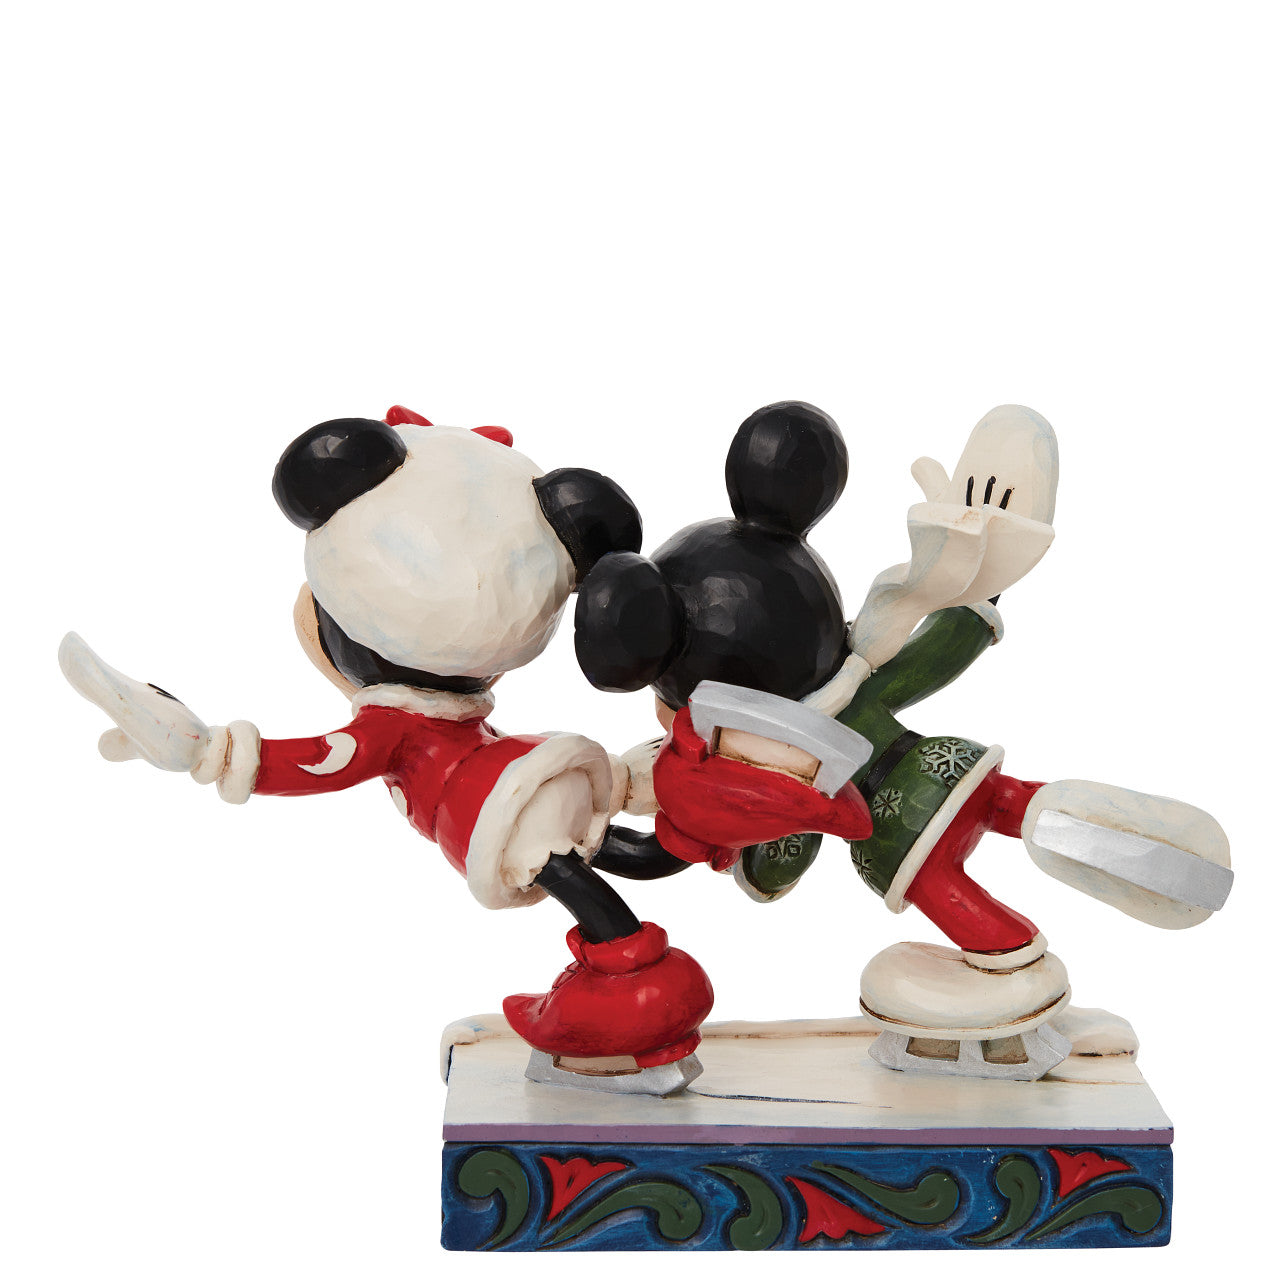 Skating Sweethearts - Mickey and Minnie Ice Skating